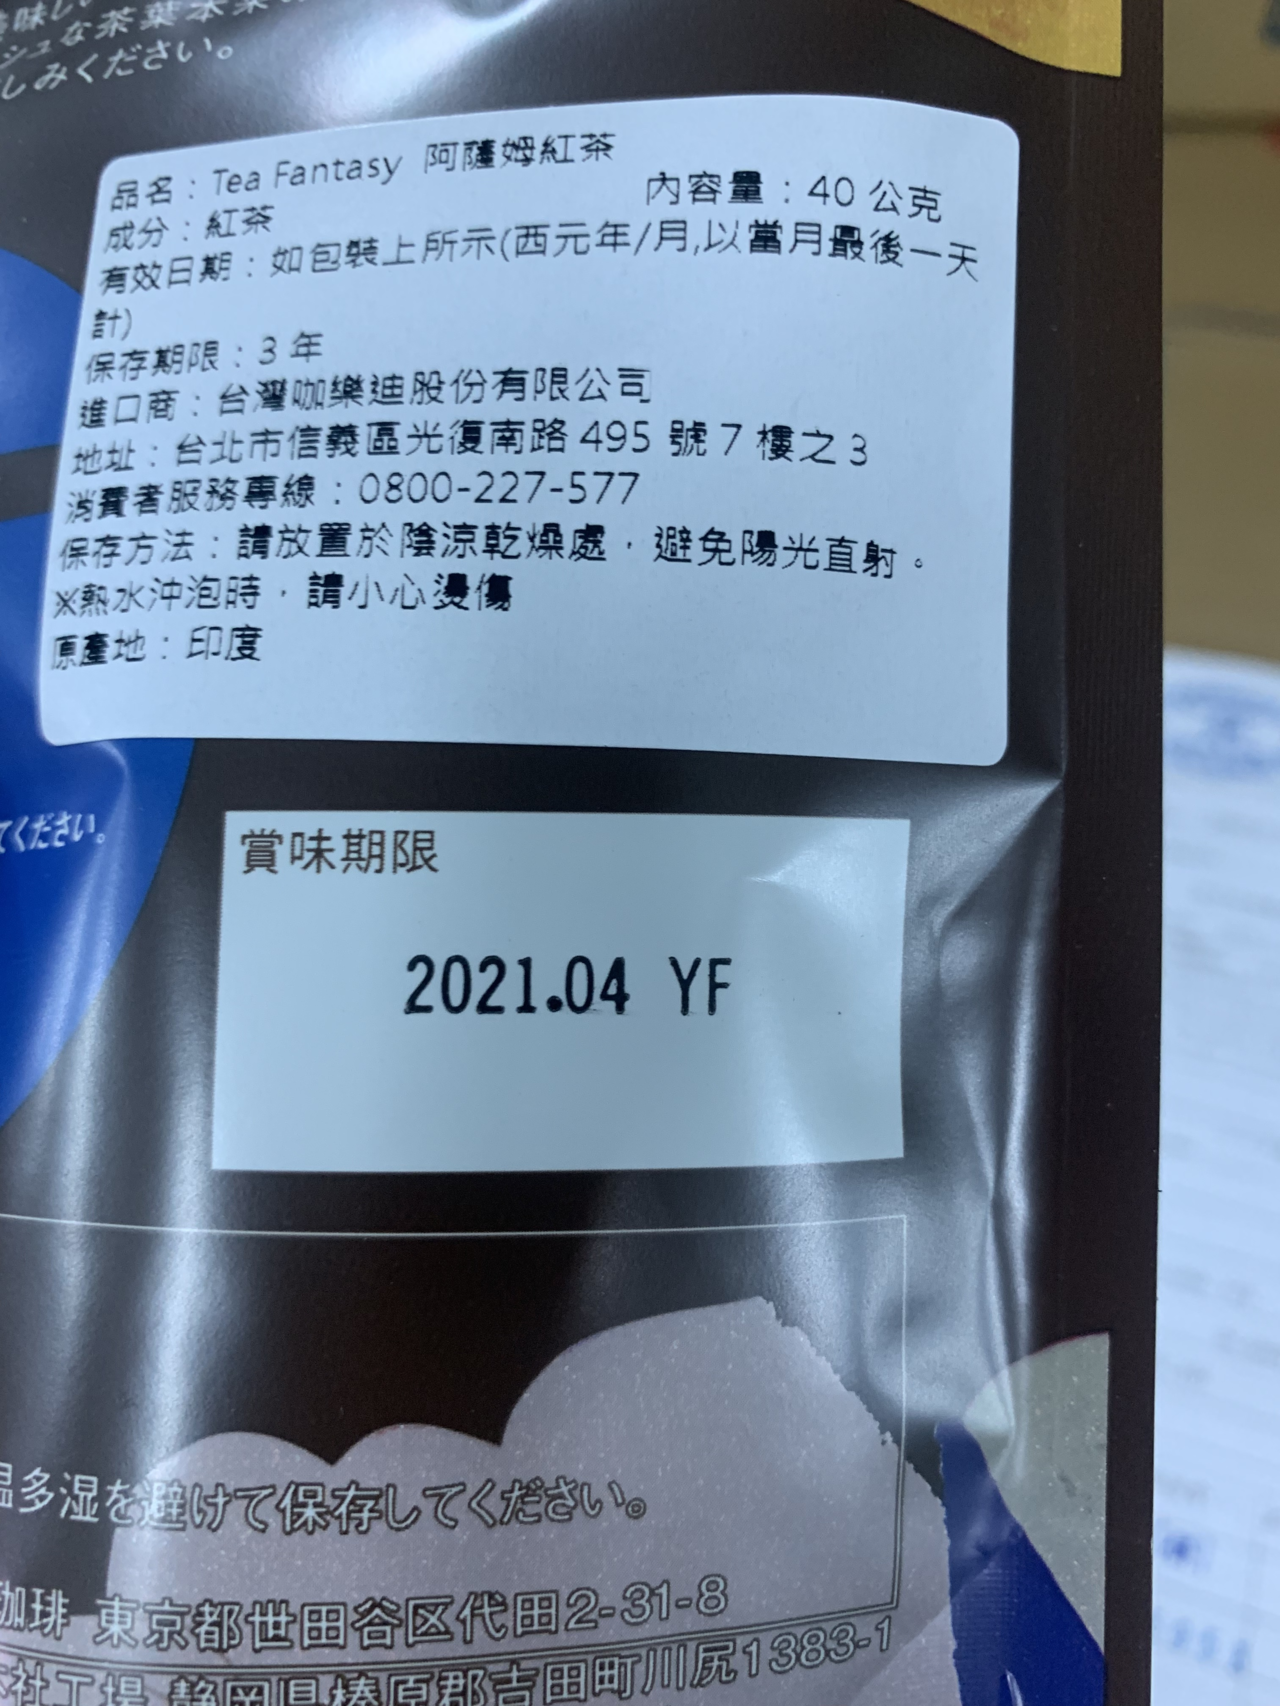 日本連鎖超市「咖樂迪咖啡農場」進口500件「Tea Fantasy 阿薩姆紅茶」，被驗出含有農藥賽果培達0.25ppm。圖／食品藥物管理署提供